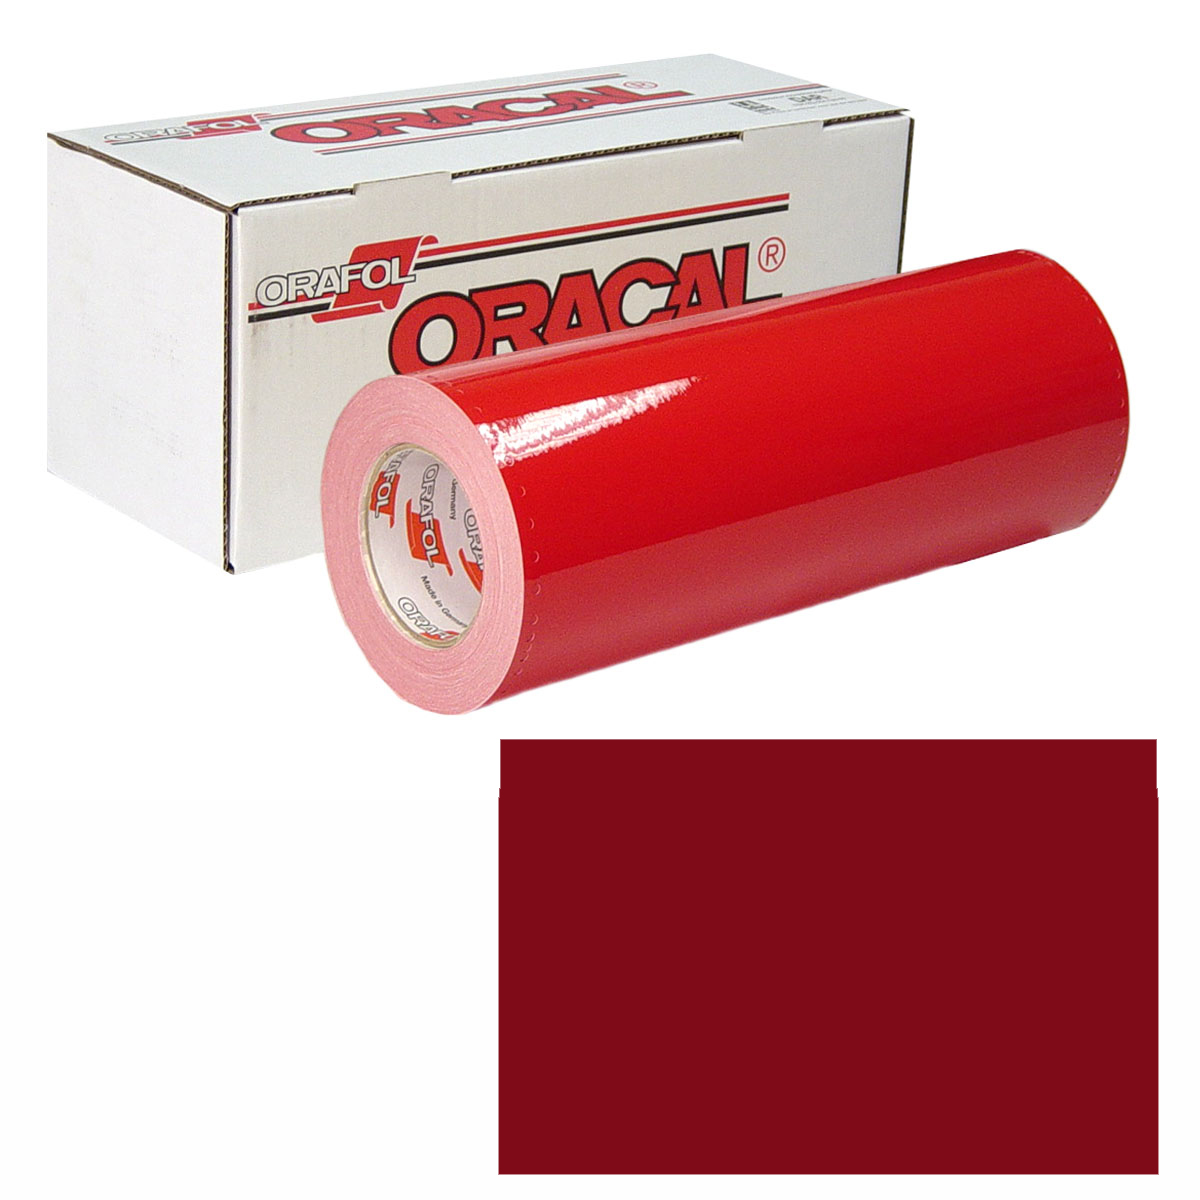 ORACAL 951M Unp 48in X 10yd 367 Red Metallic